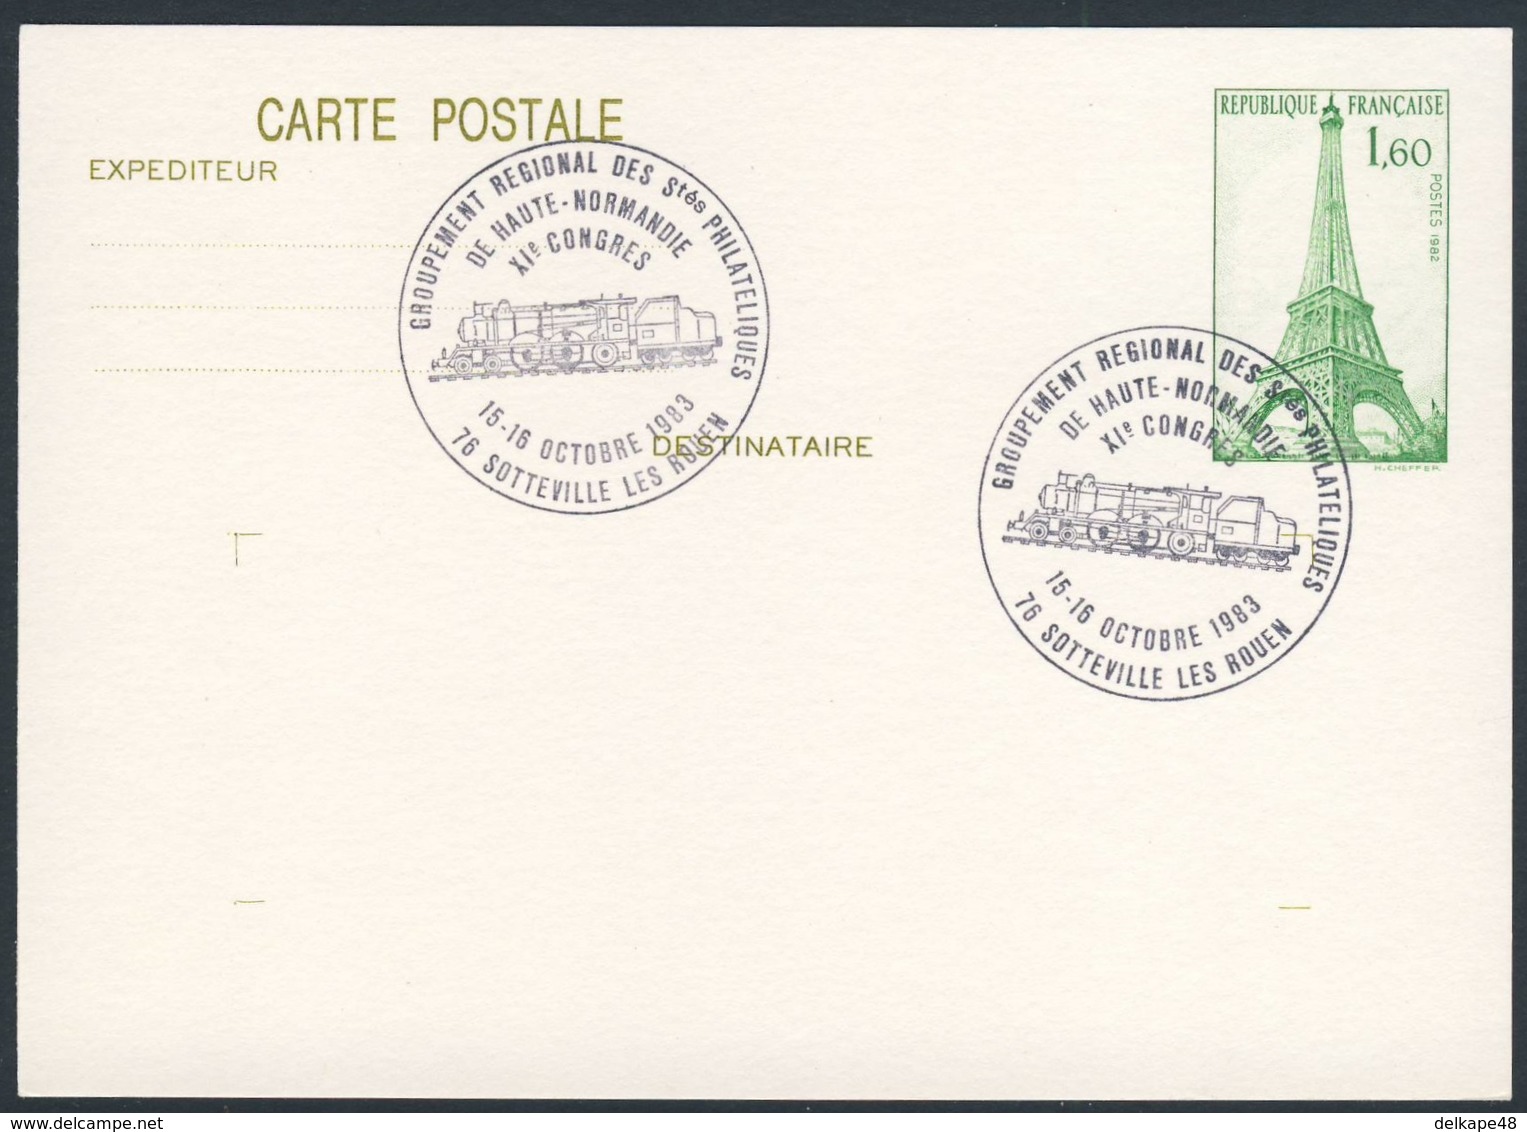 France Rep. Française 1983 Card / Karte / Carte Postale - Groupement Reg. Philateliques Haute Normandie - XIe Congres - Treinen